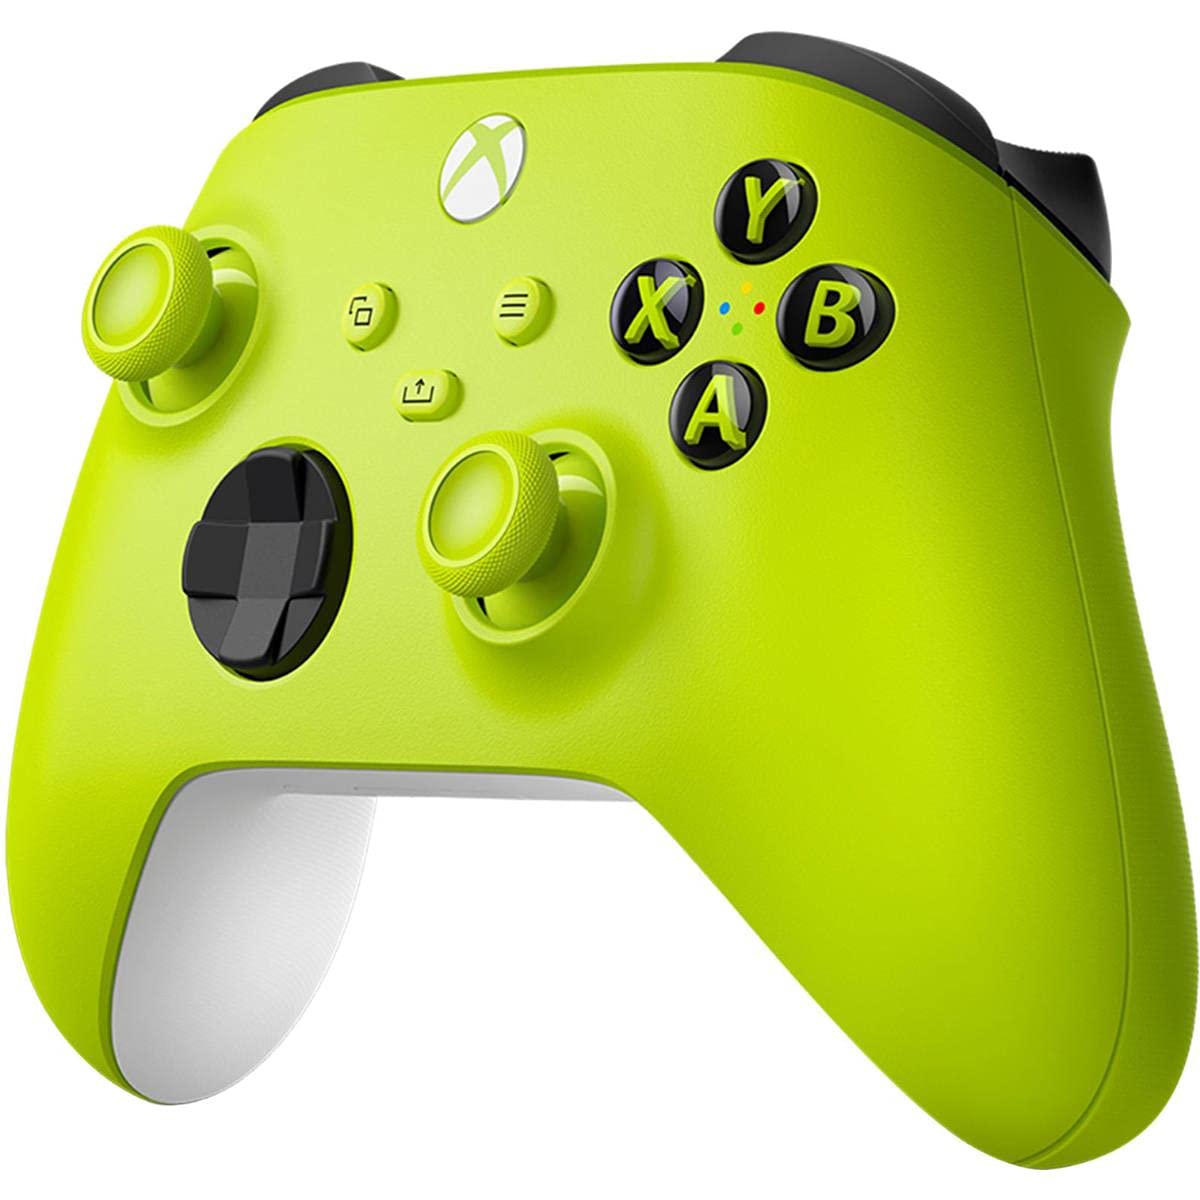 Gamepad Không dây Bluetooth Xbox One X Green - cho máy tính, laptop, smartphone, máy tính bảng, máy game